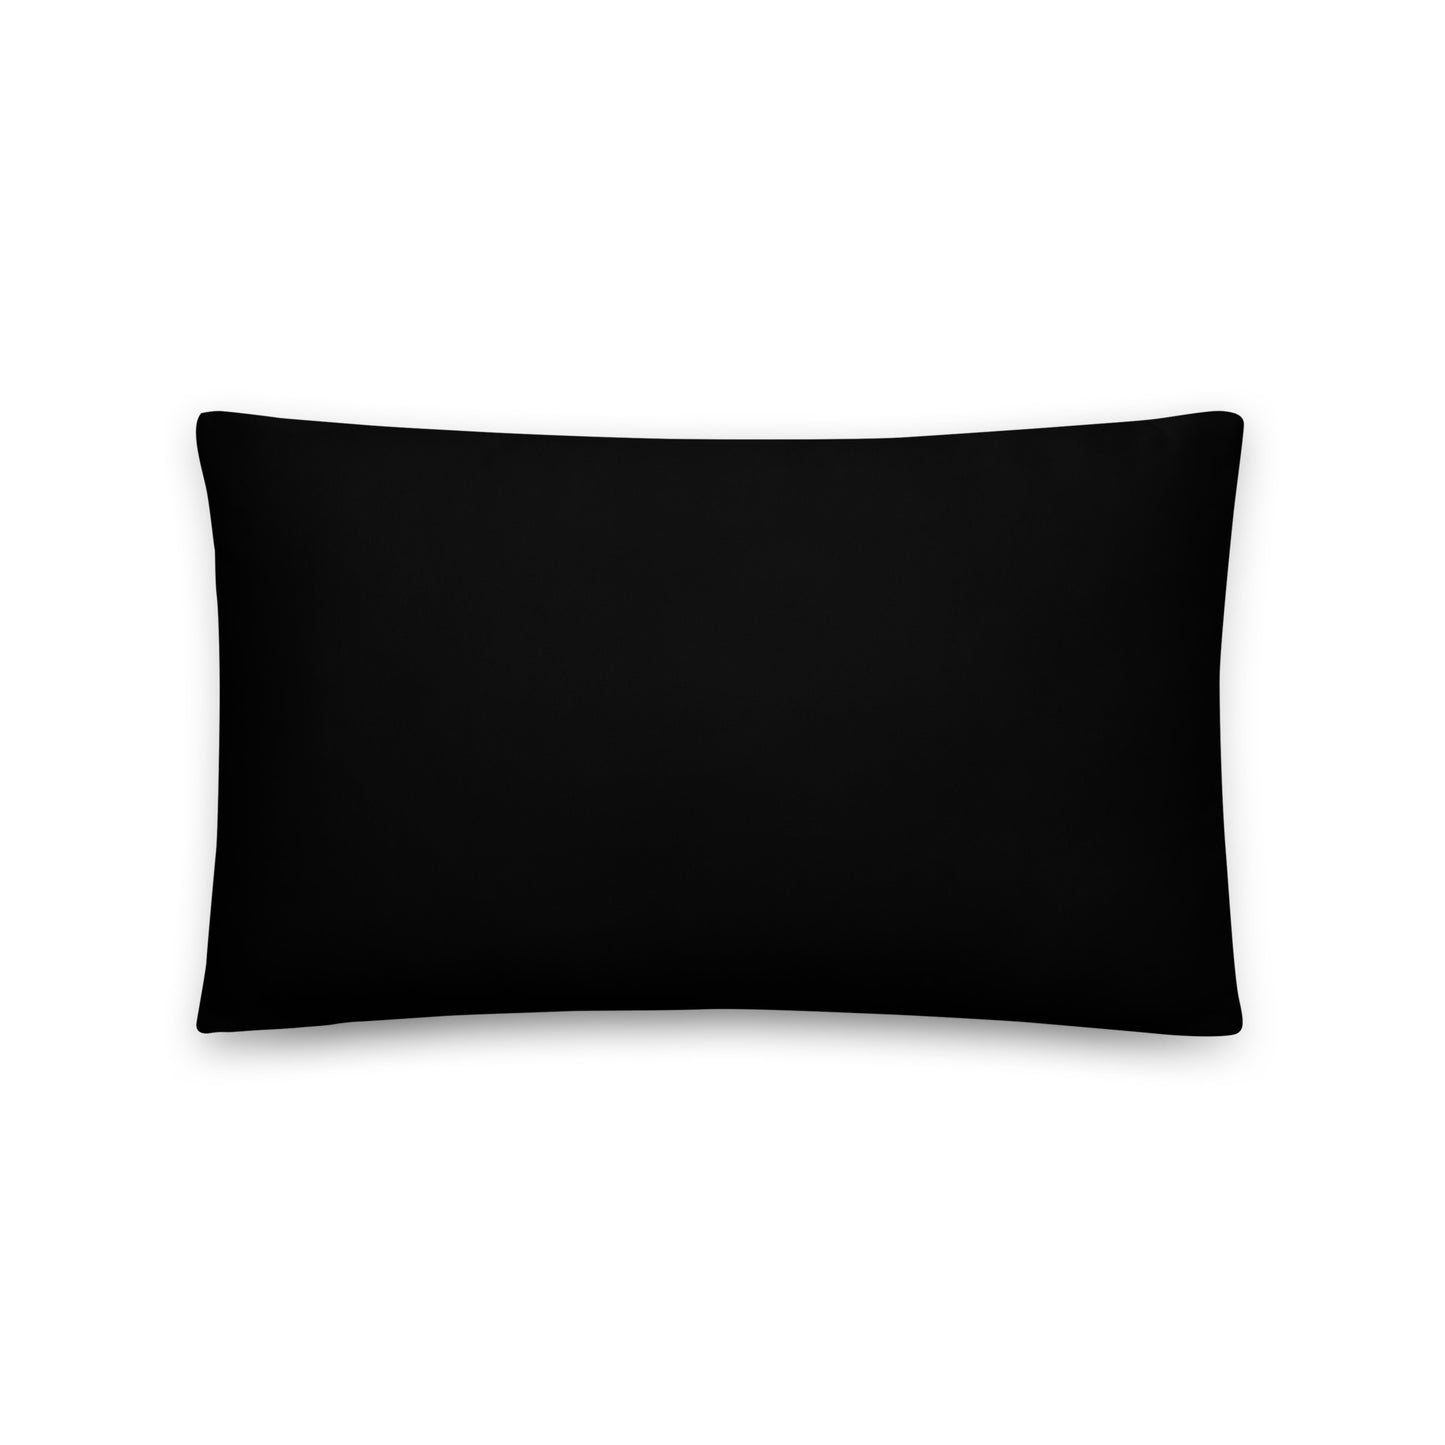 Pearson Georgia Basic Pillow